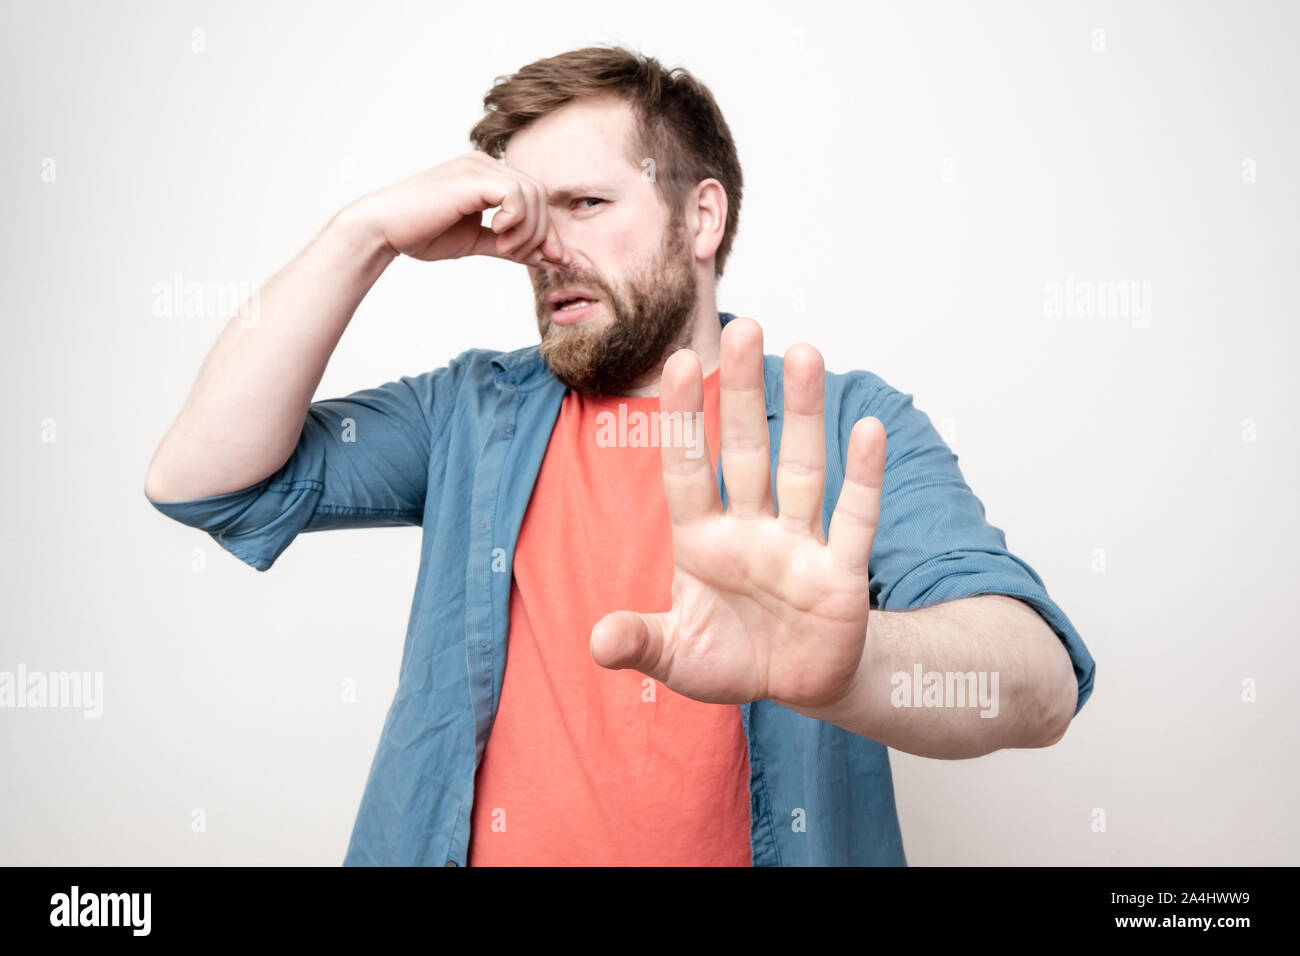 Caucasici, uomo barbuto spreme il naso con la mano a causa di un odore sgradevole e mette il suo palm in avanti, bloccando la fonte del fetore. Isol. Foto Stock